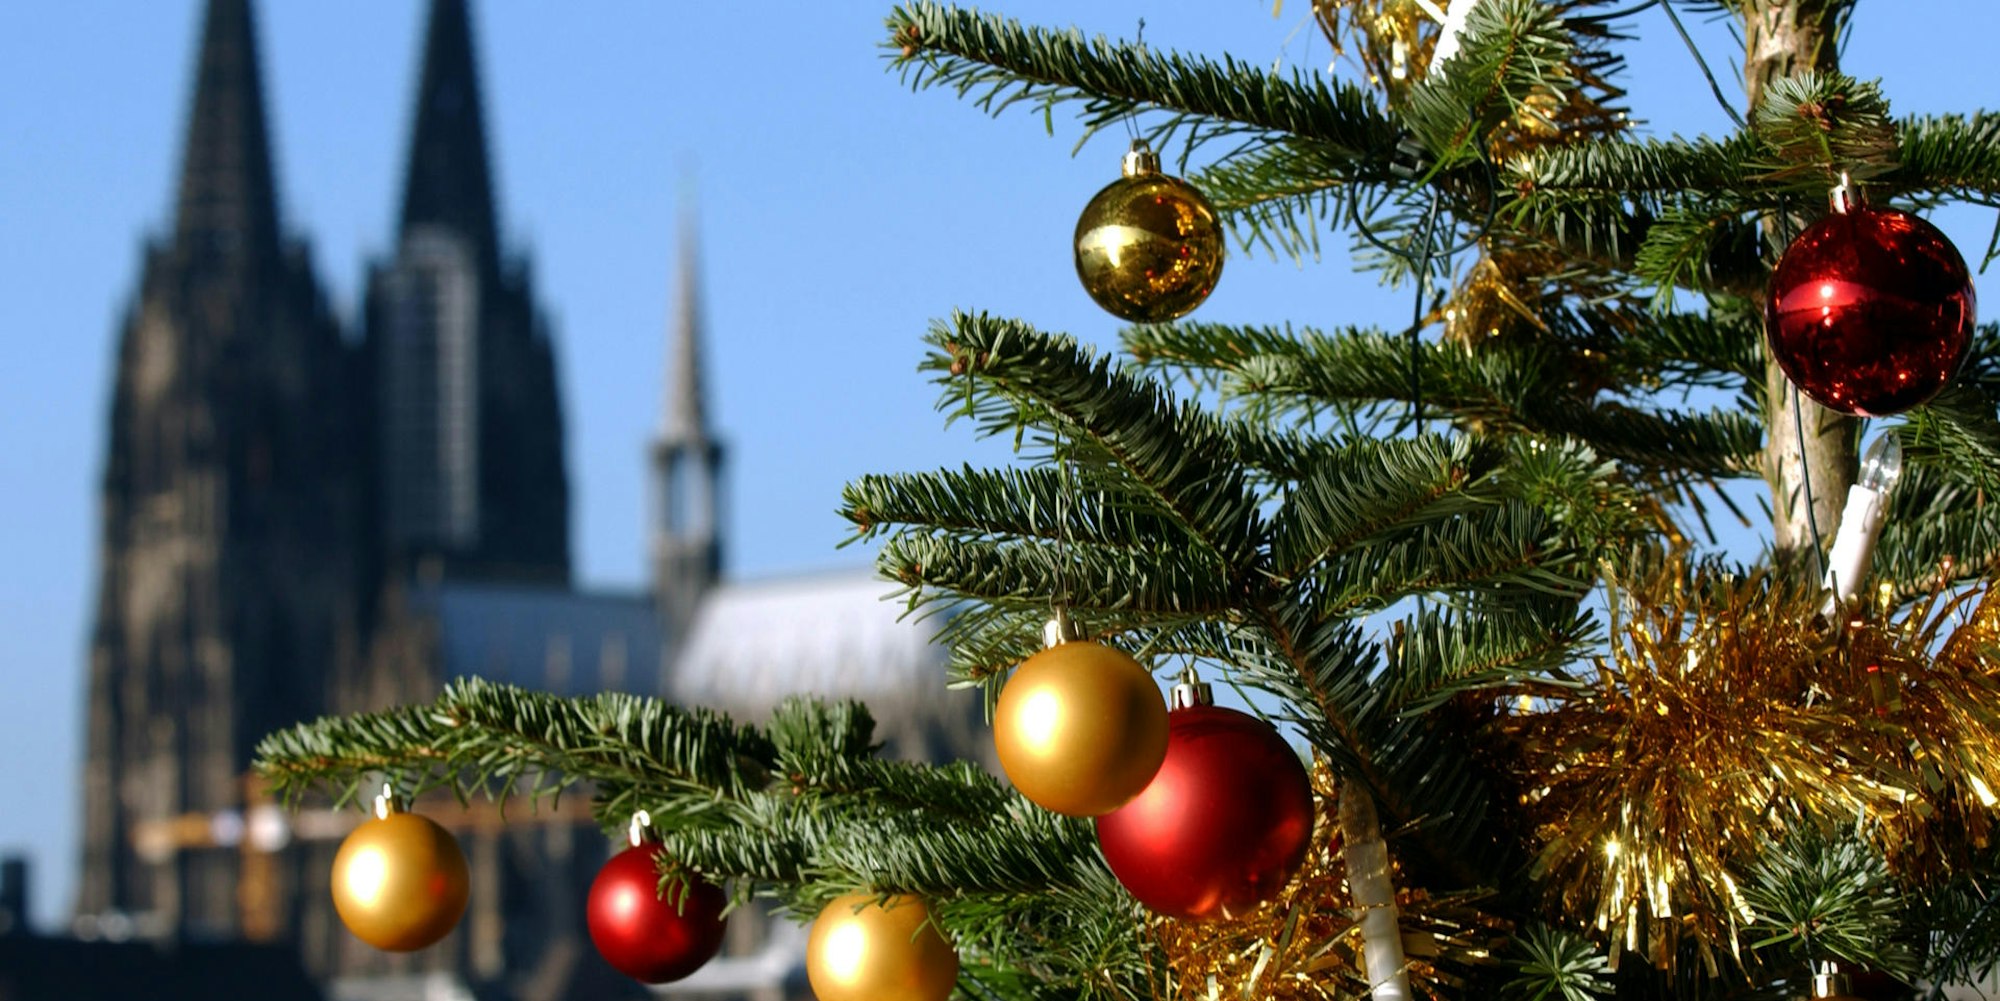 Ein Weihnachtsbaum vor dem Kölner Dom